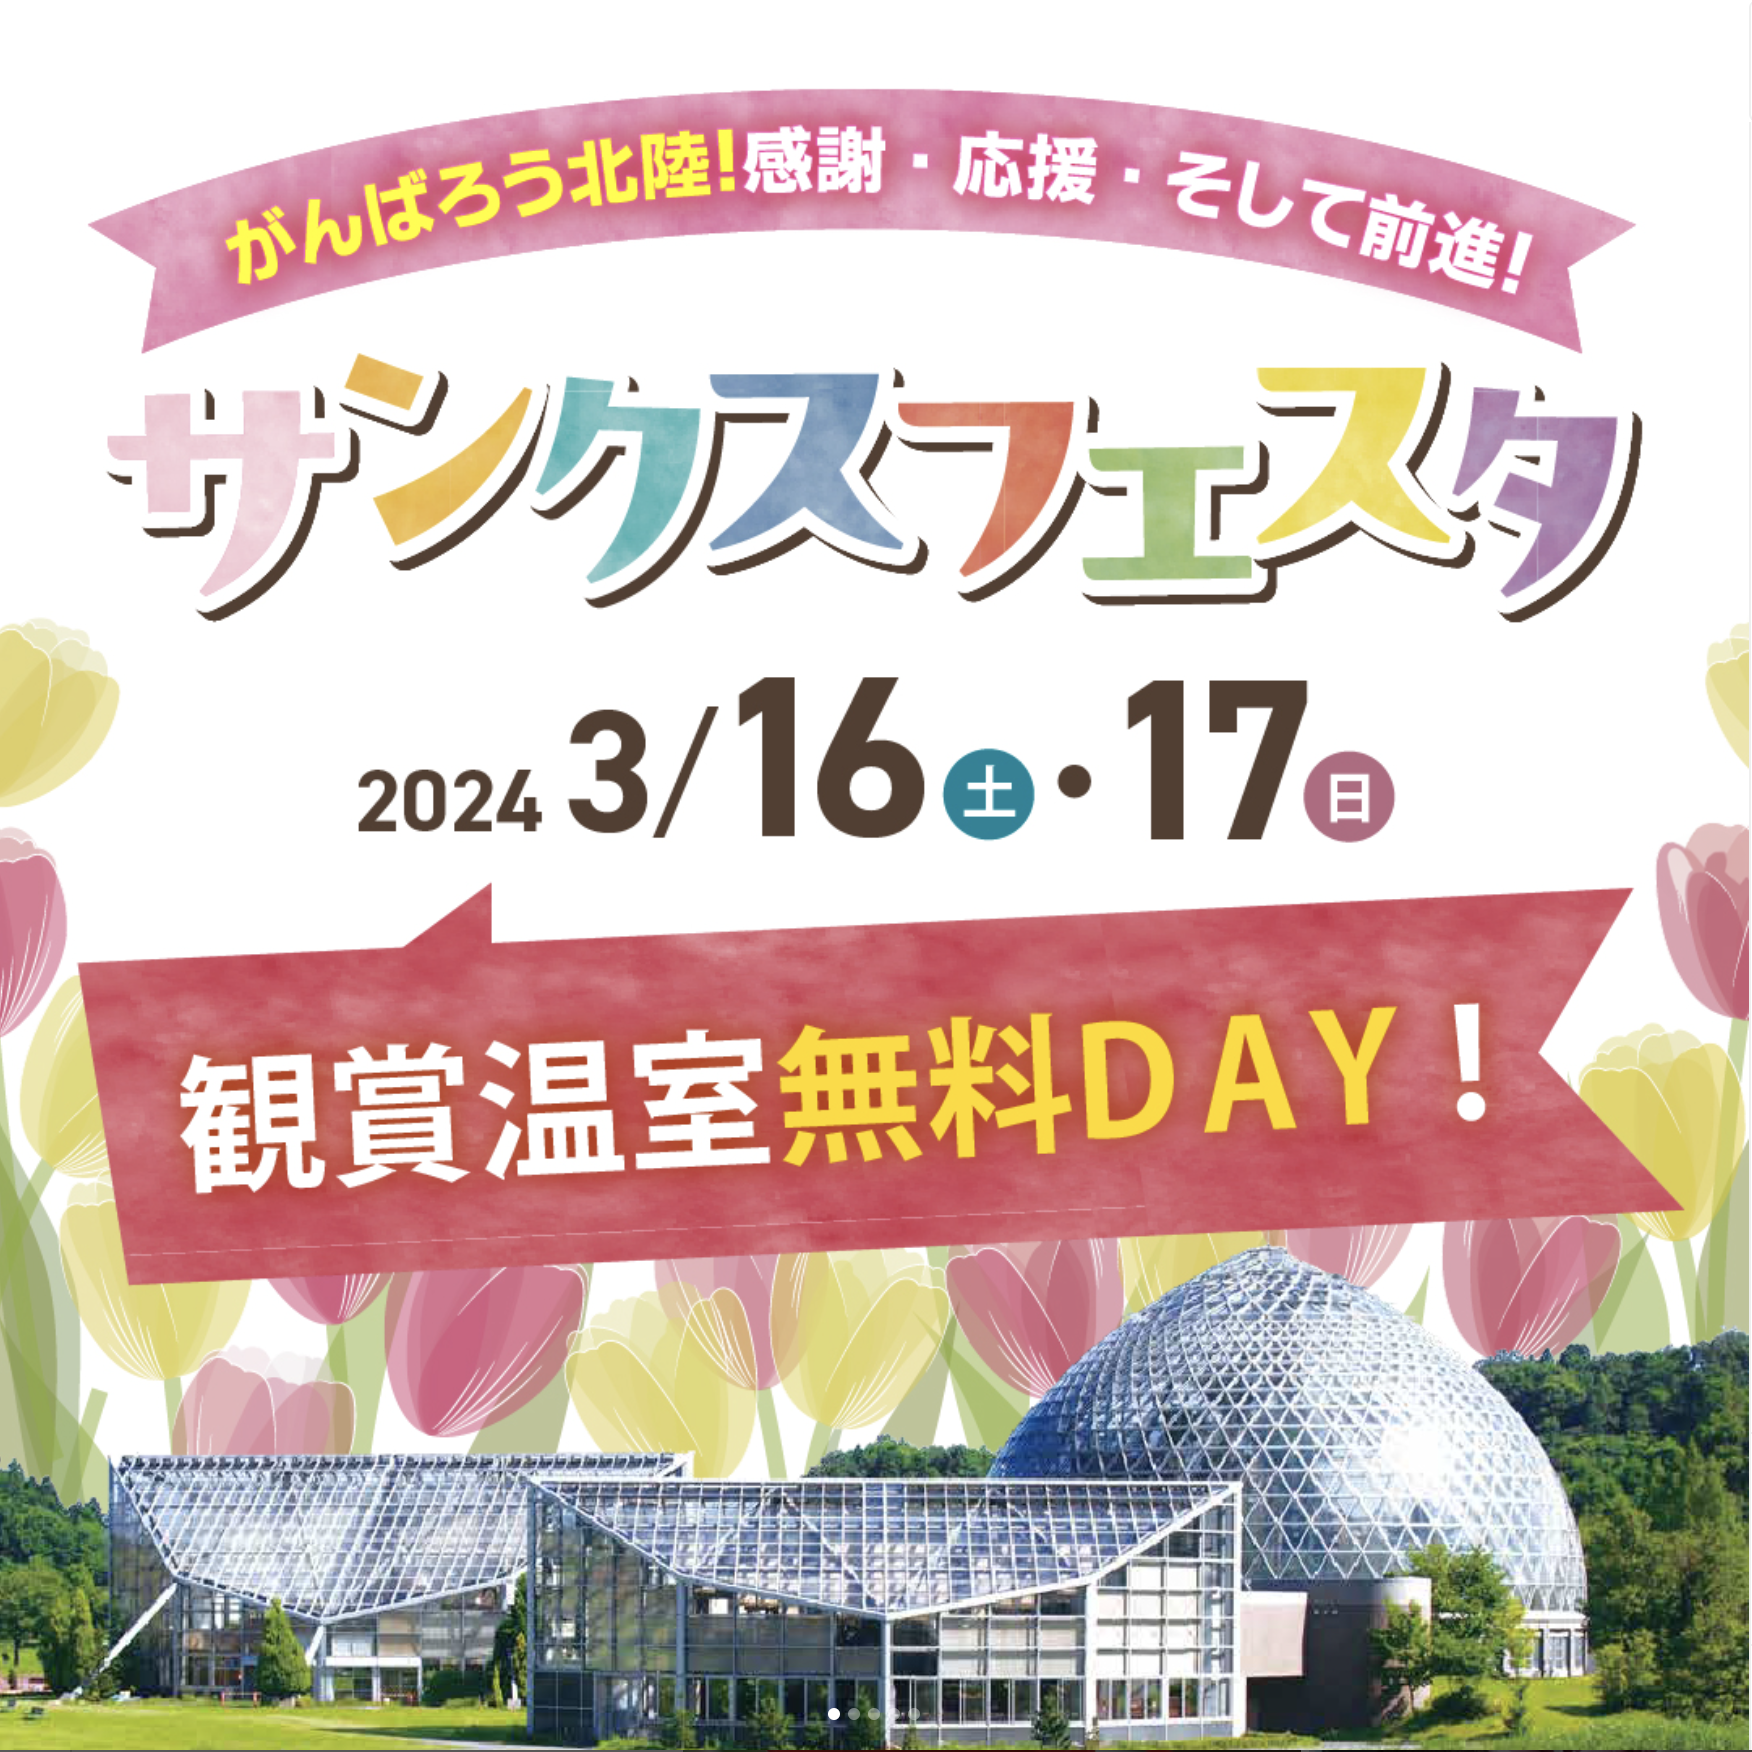 新潟県立植物園25周年 サンクスフェスタ